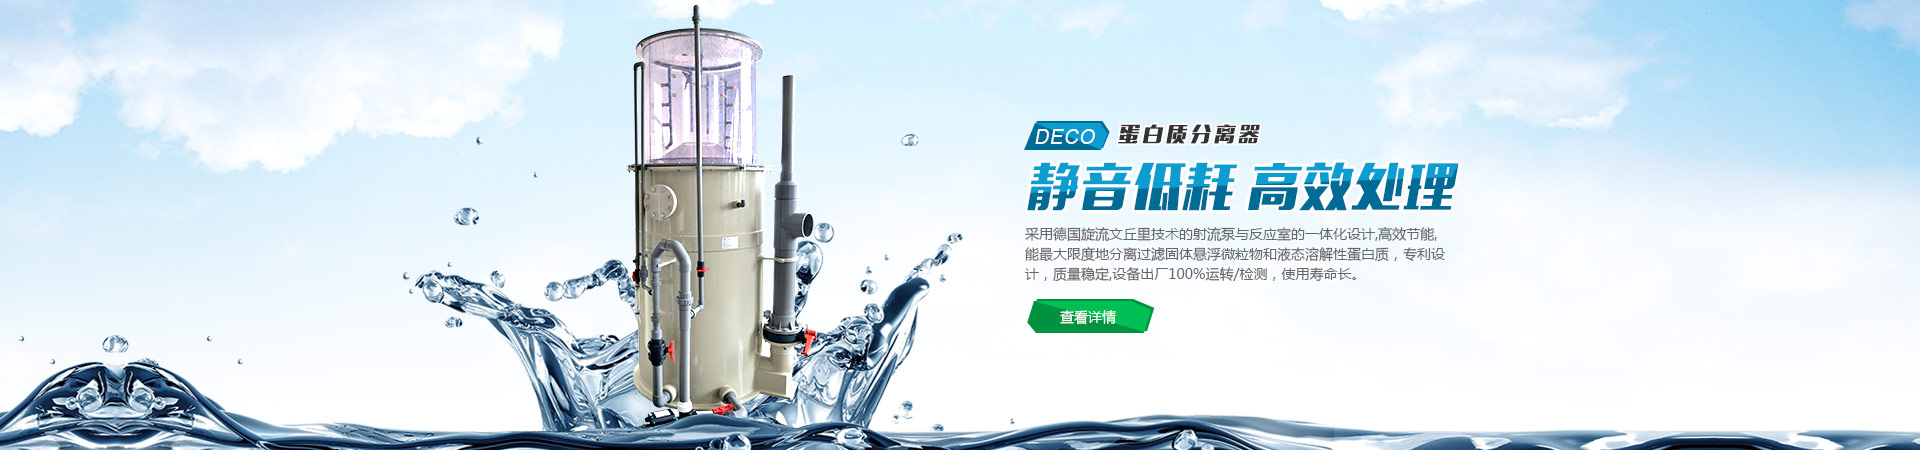 上海连宇泵业有限公司